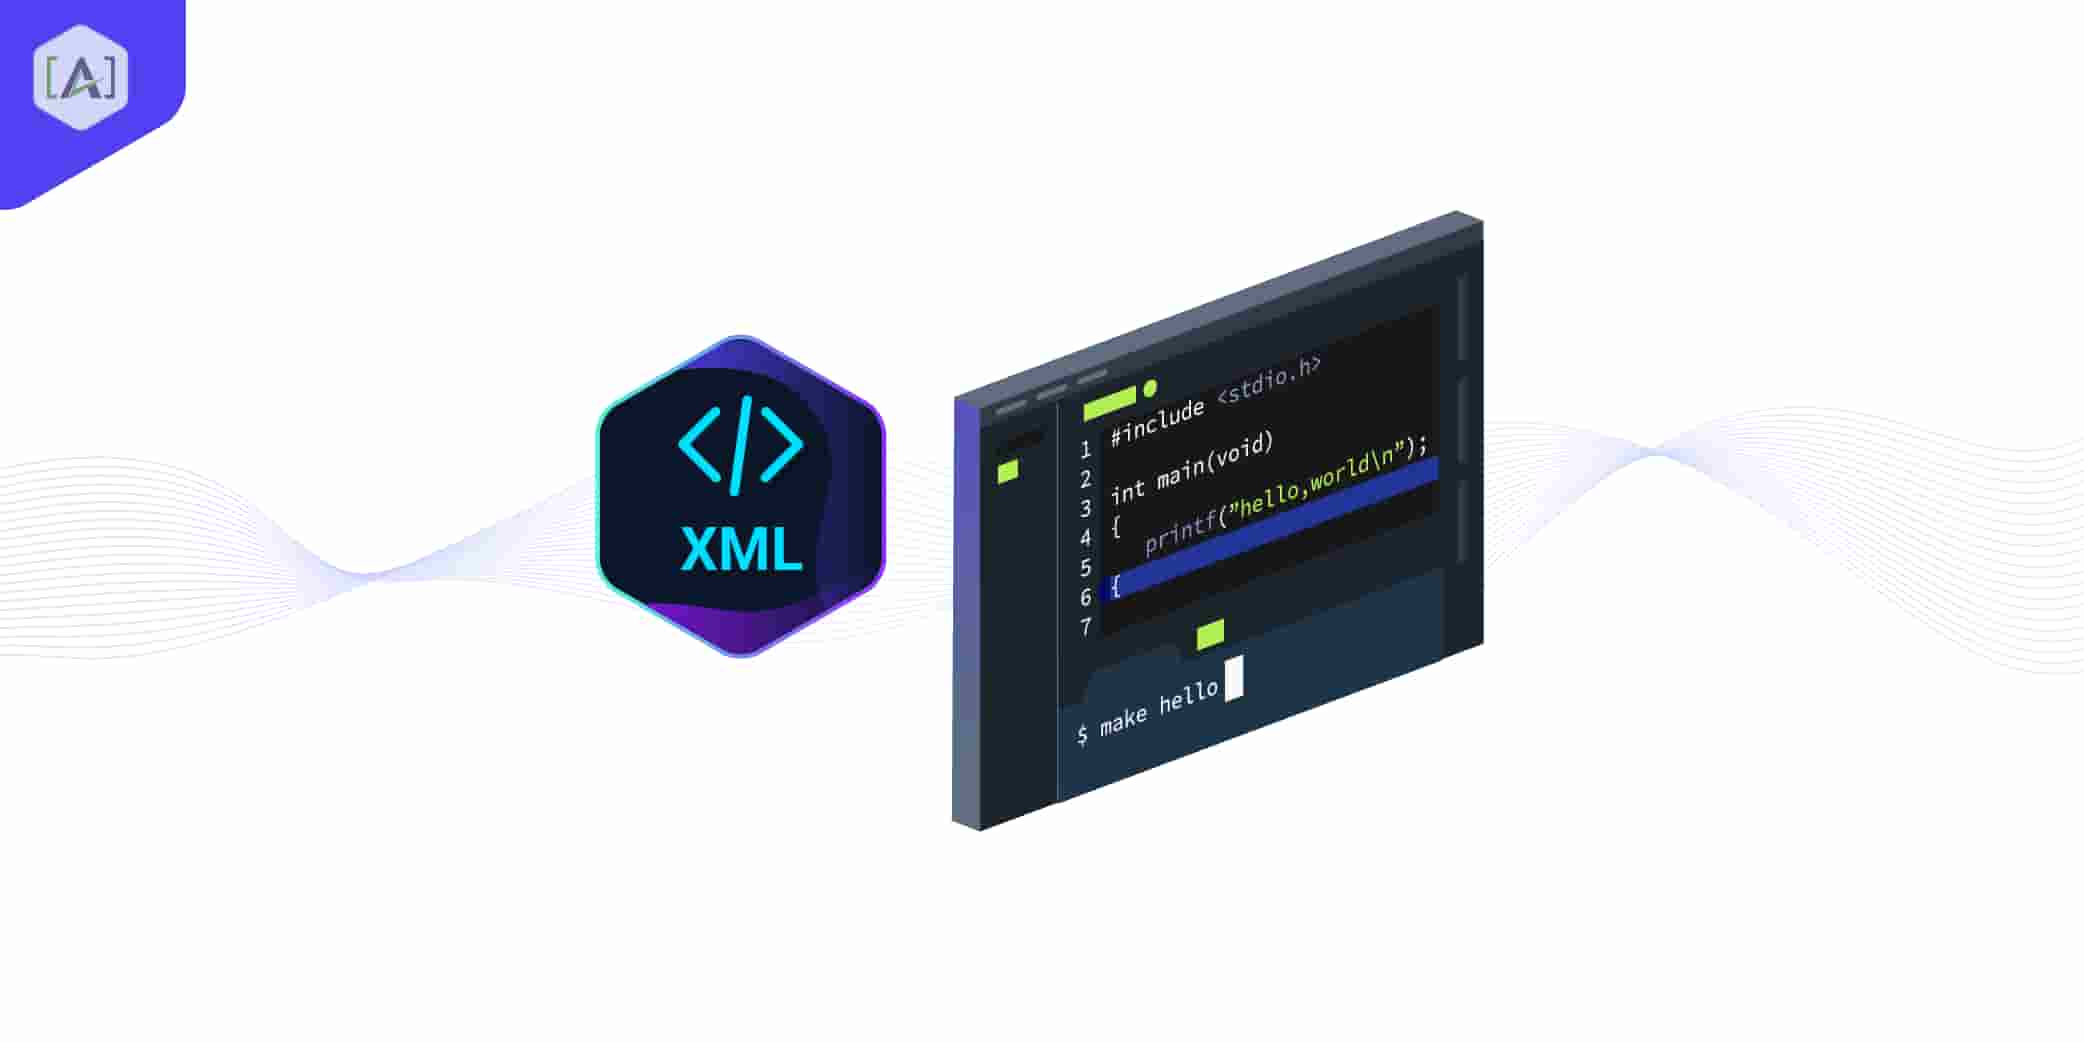 XML 